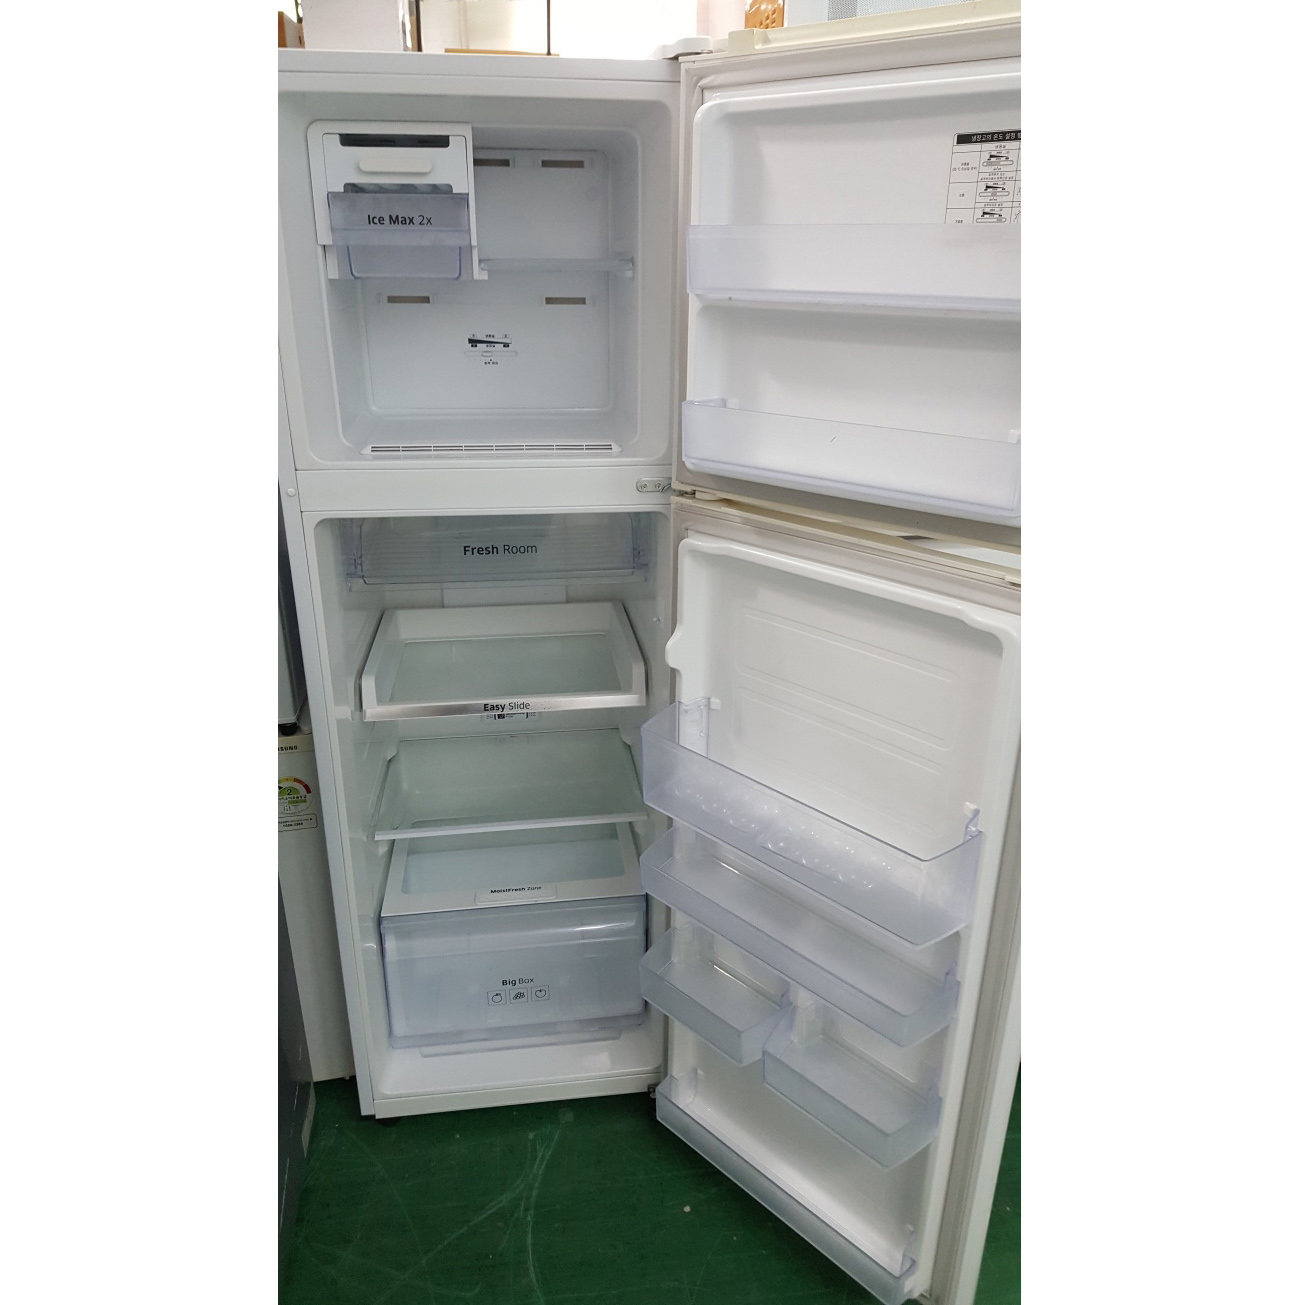 냉장고 255L